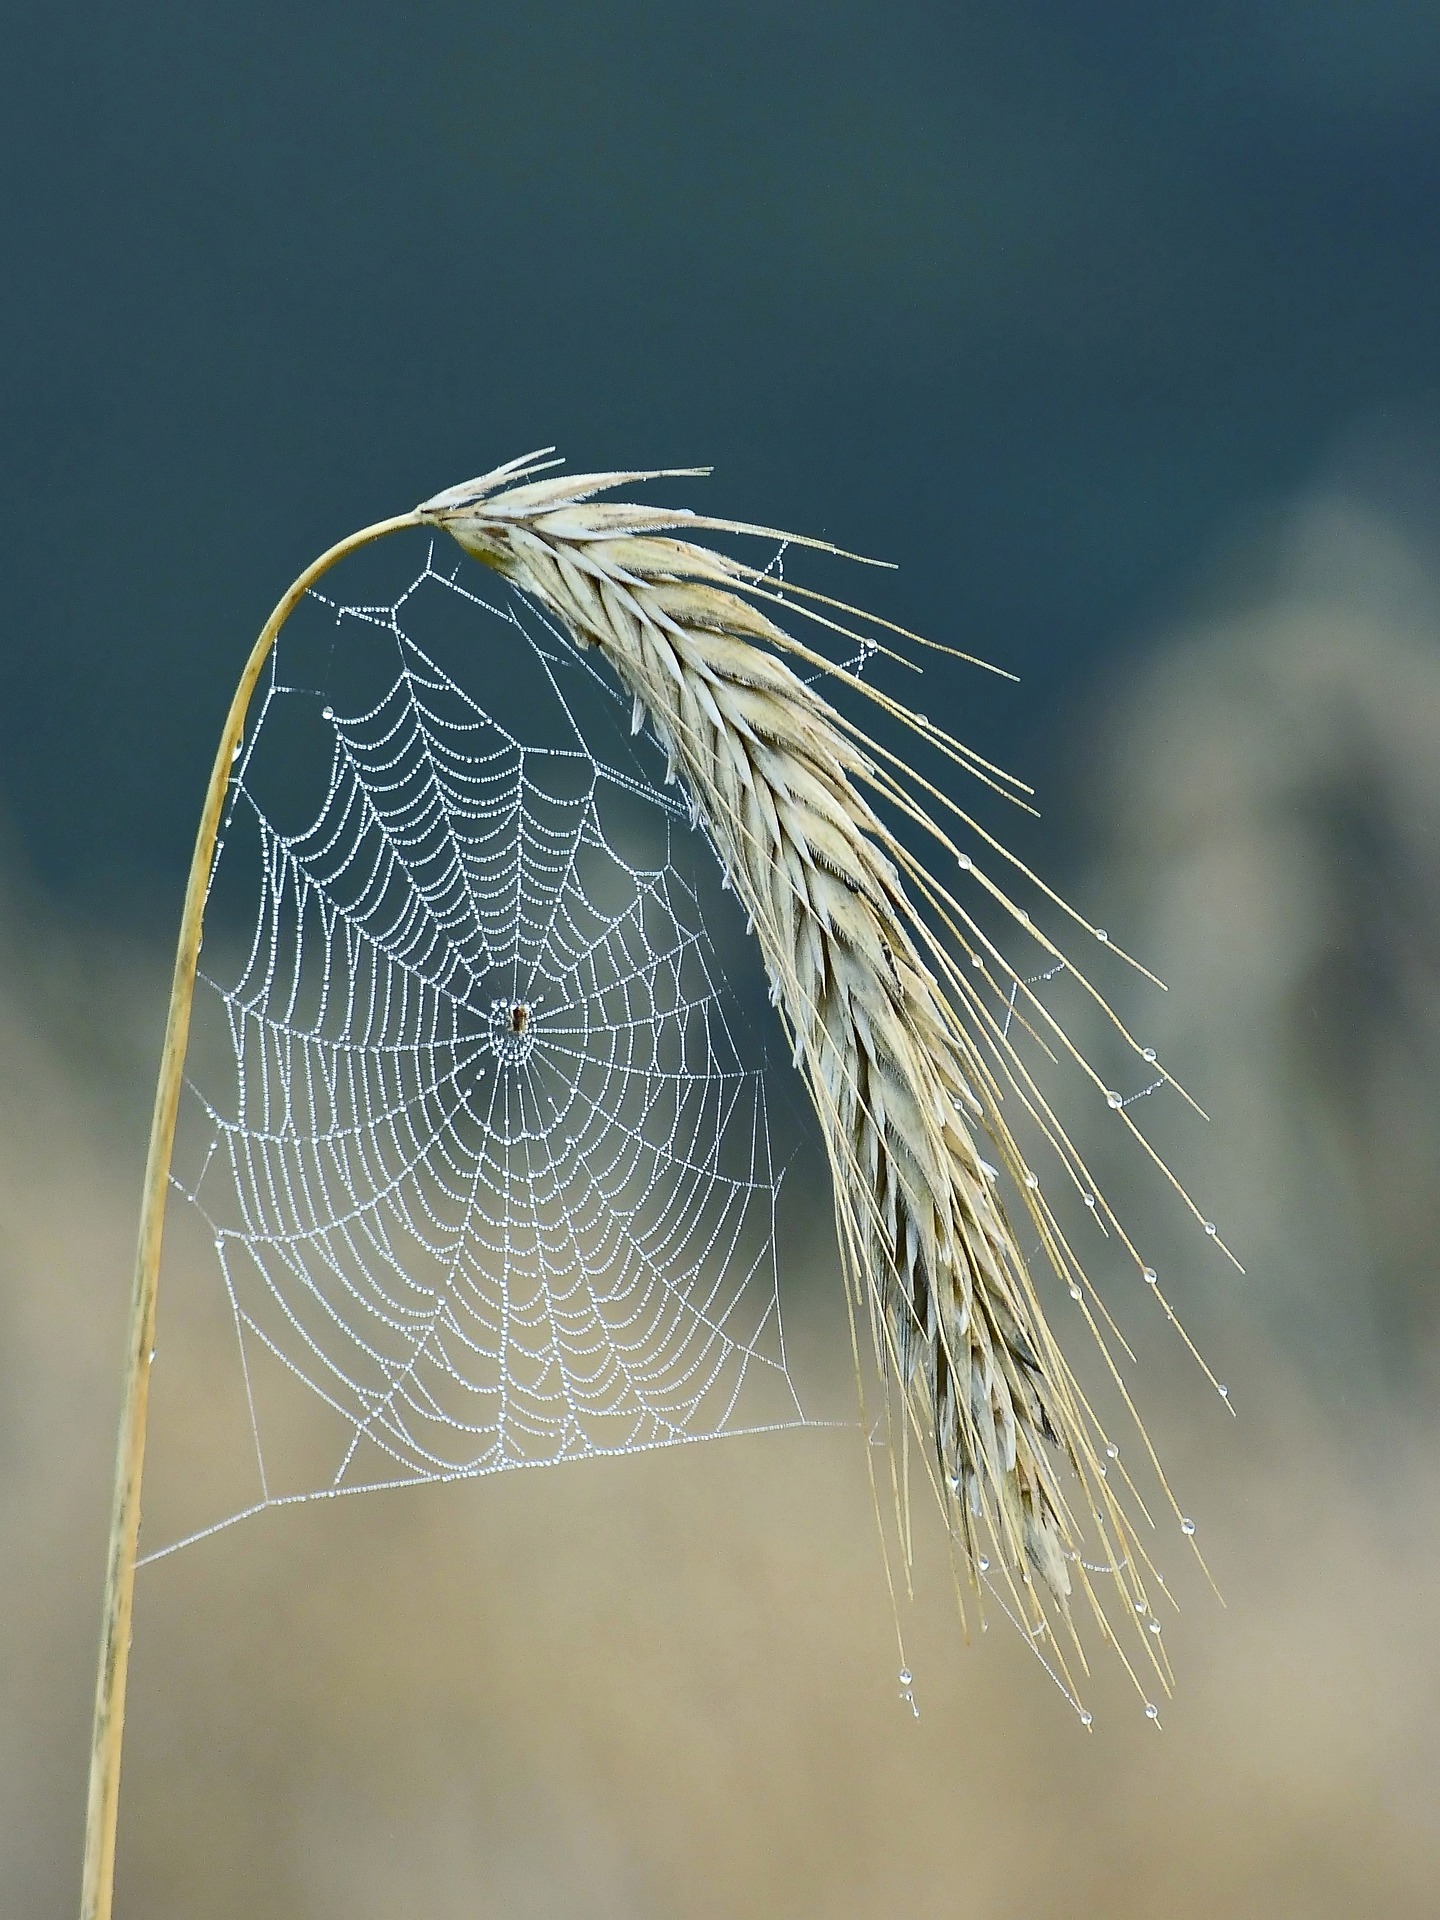 Ein Spinnennetz hängt an einer Ähre